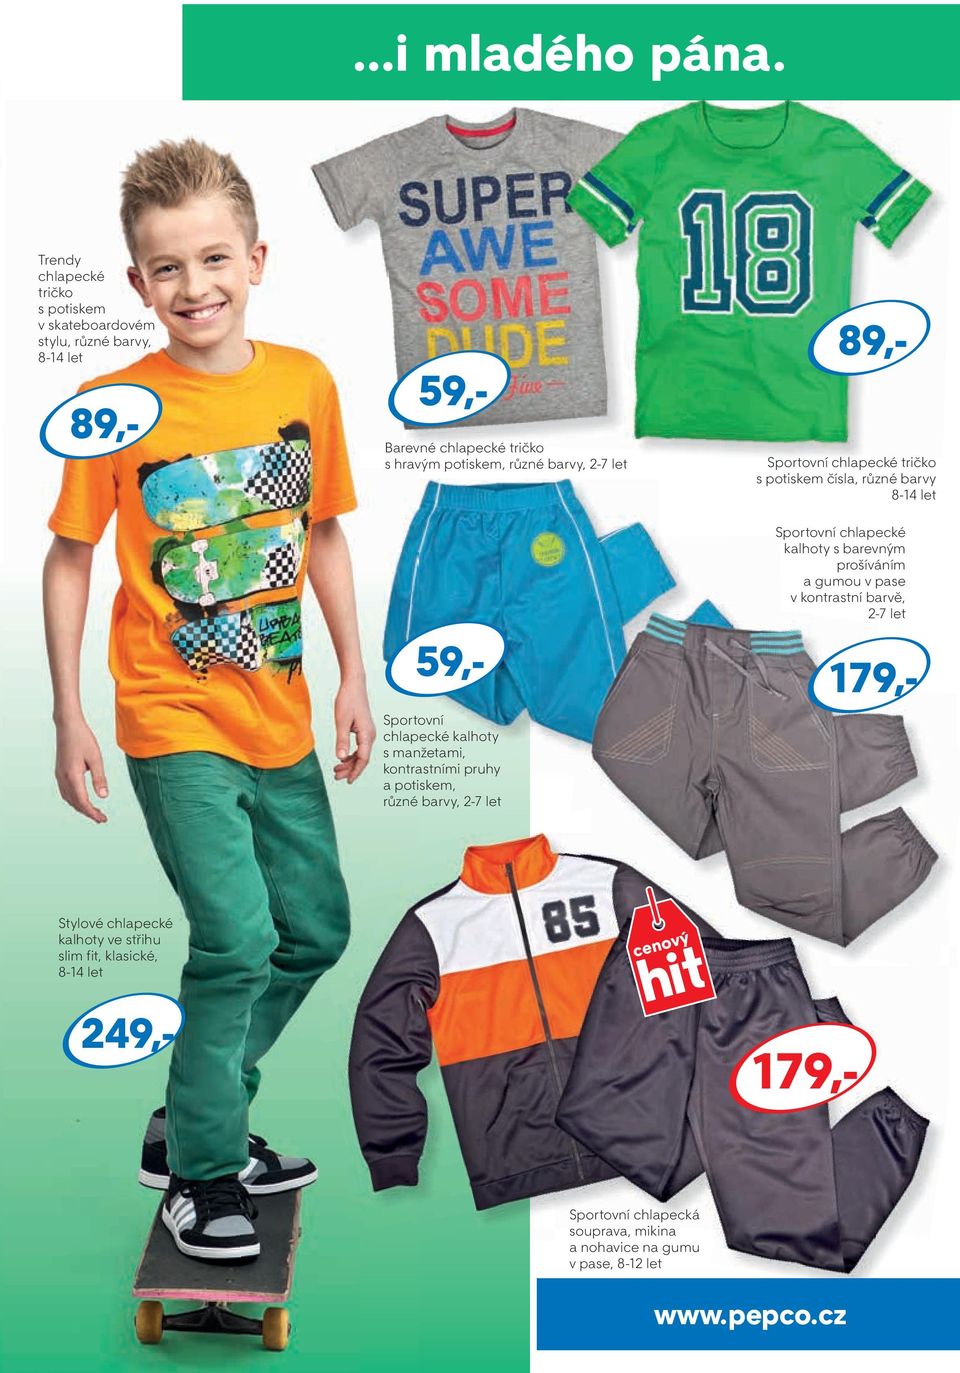 Sportovní chlapecké kalhoty s manžetami, kontrastními pruhy a potiskem, různé barvy, 2-7 let Sportovní chlapecké tričko s potiskem